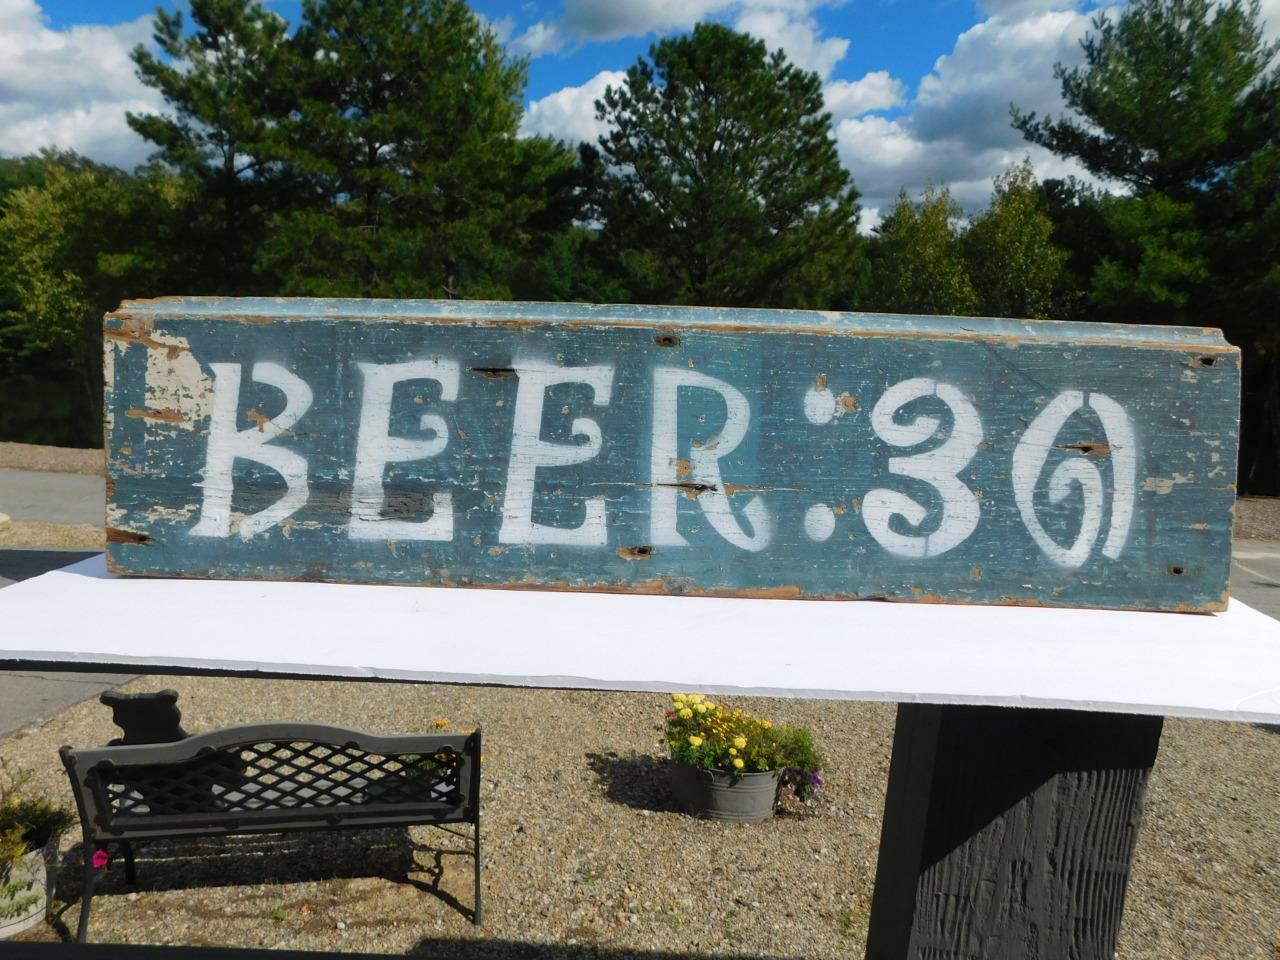 Antique Vintage Wooden Beer Sign 26 3/8" L X 6 1/2" W  "beer:30" Man Cave Cabin